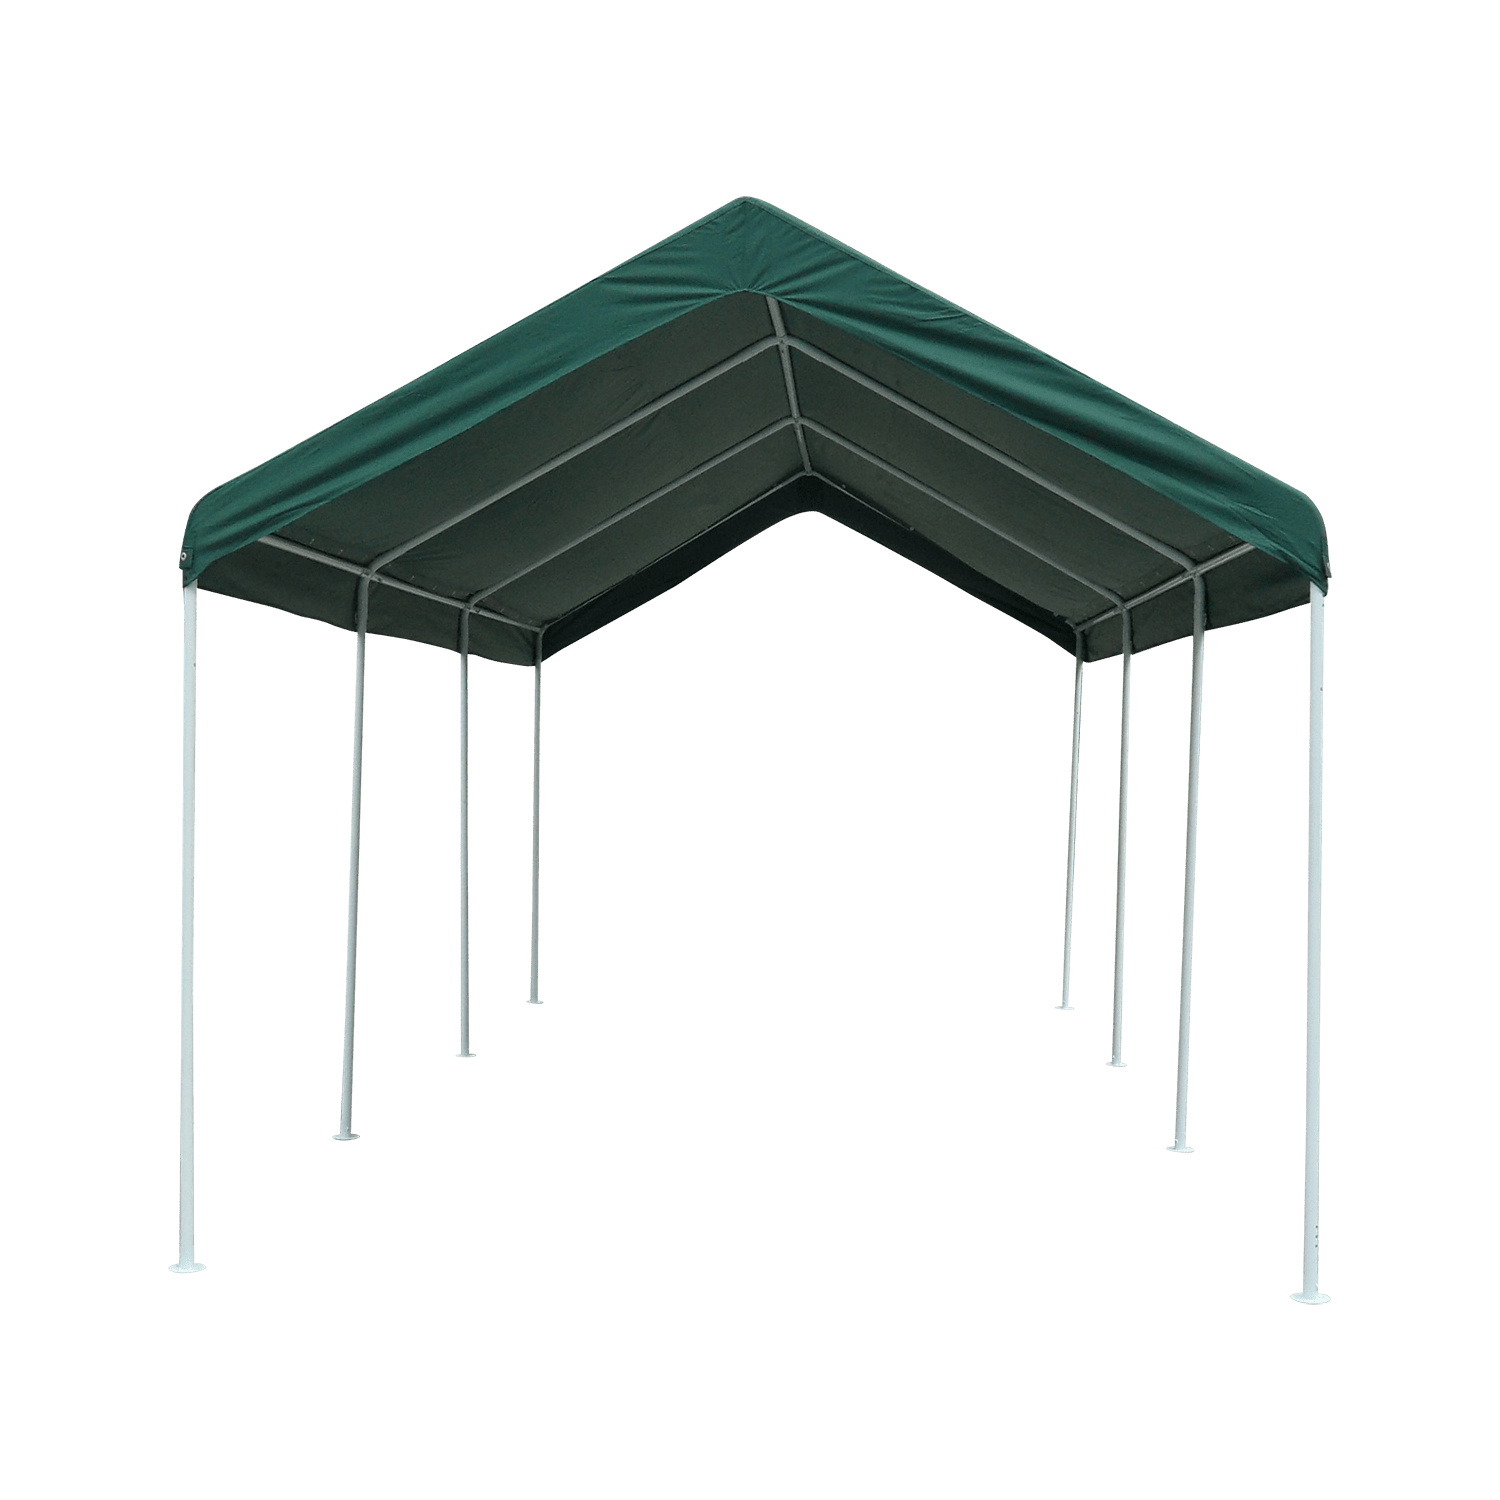 steel carport canopy design